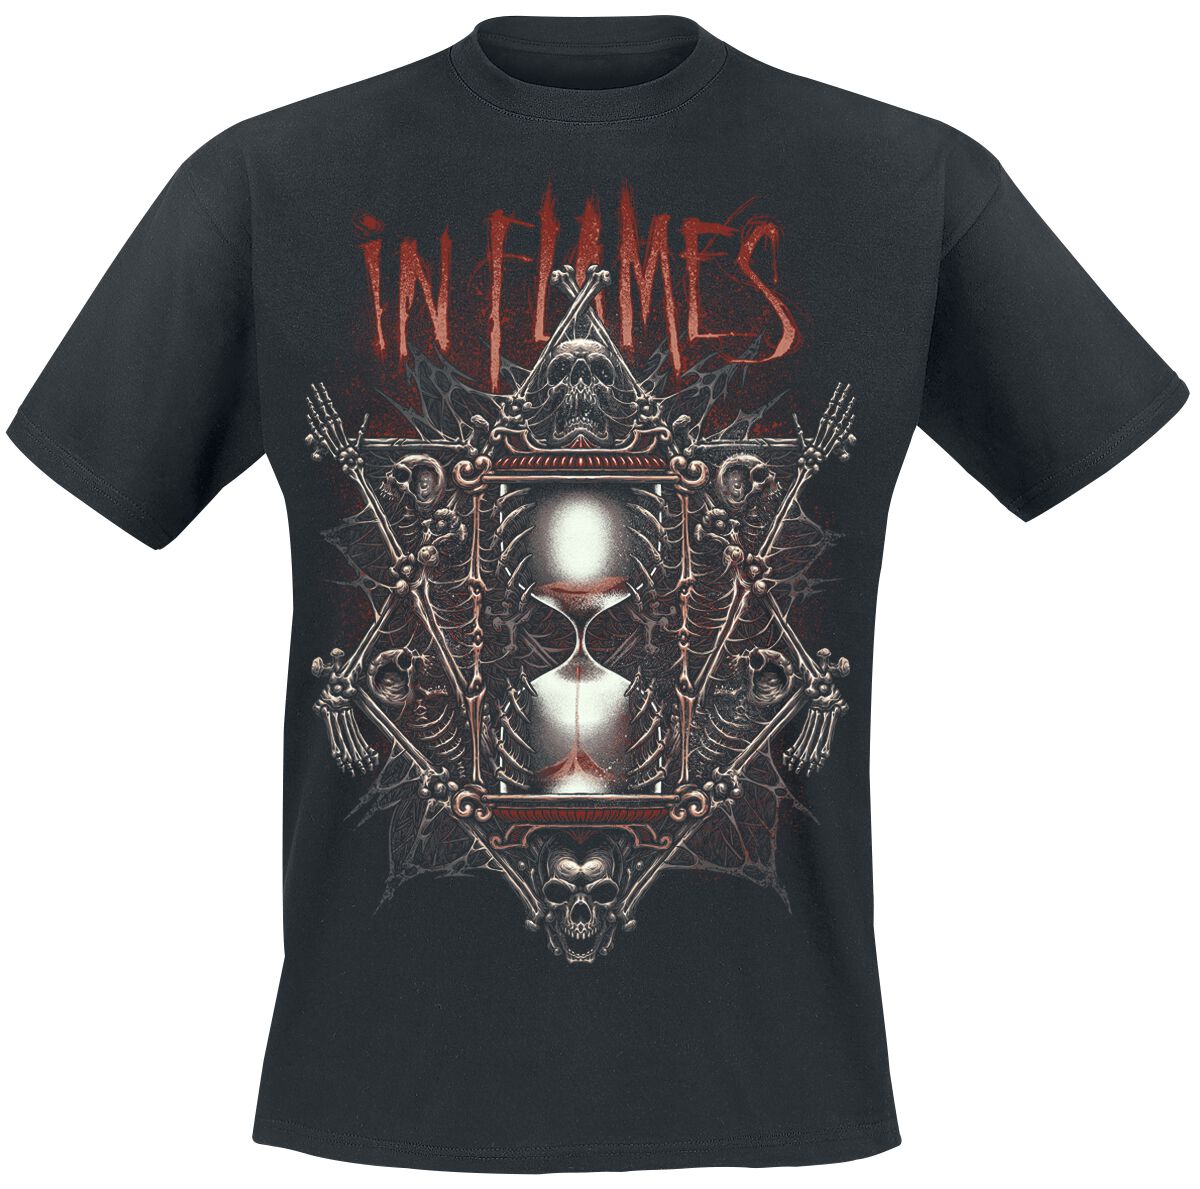 In Flames T-Shirt - Dark Hourglass - S bis 3XL - für Männer - Größe 3XL - schwarz  - Lizenziertes Merchandise!